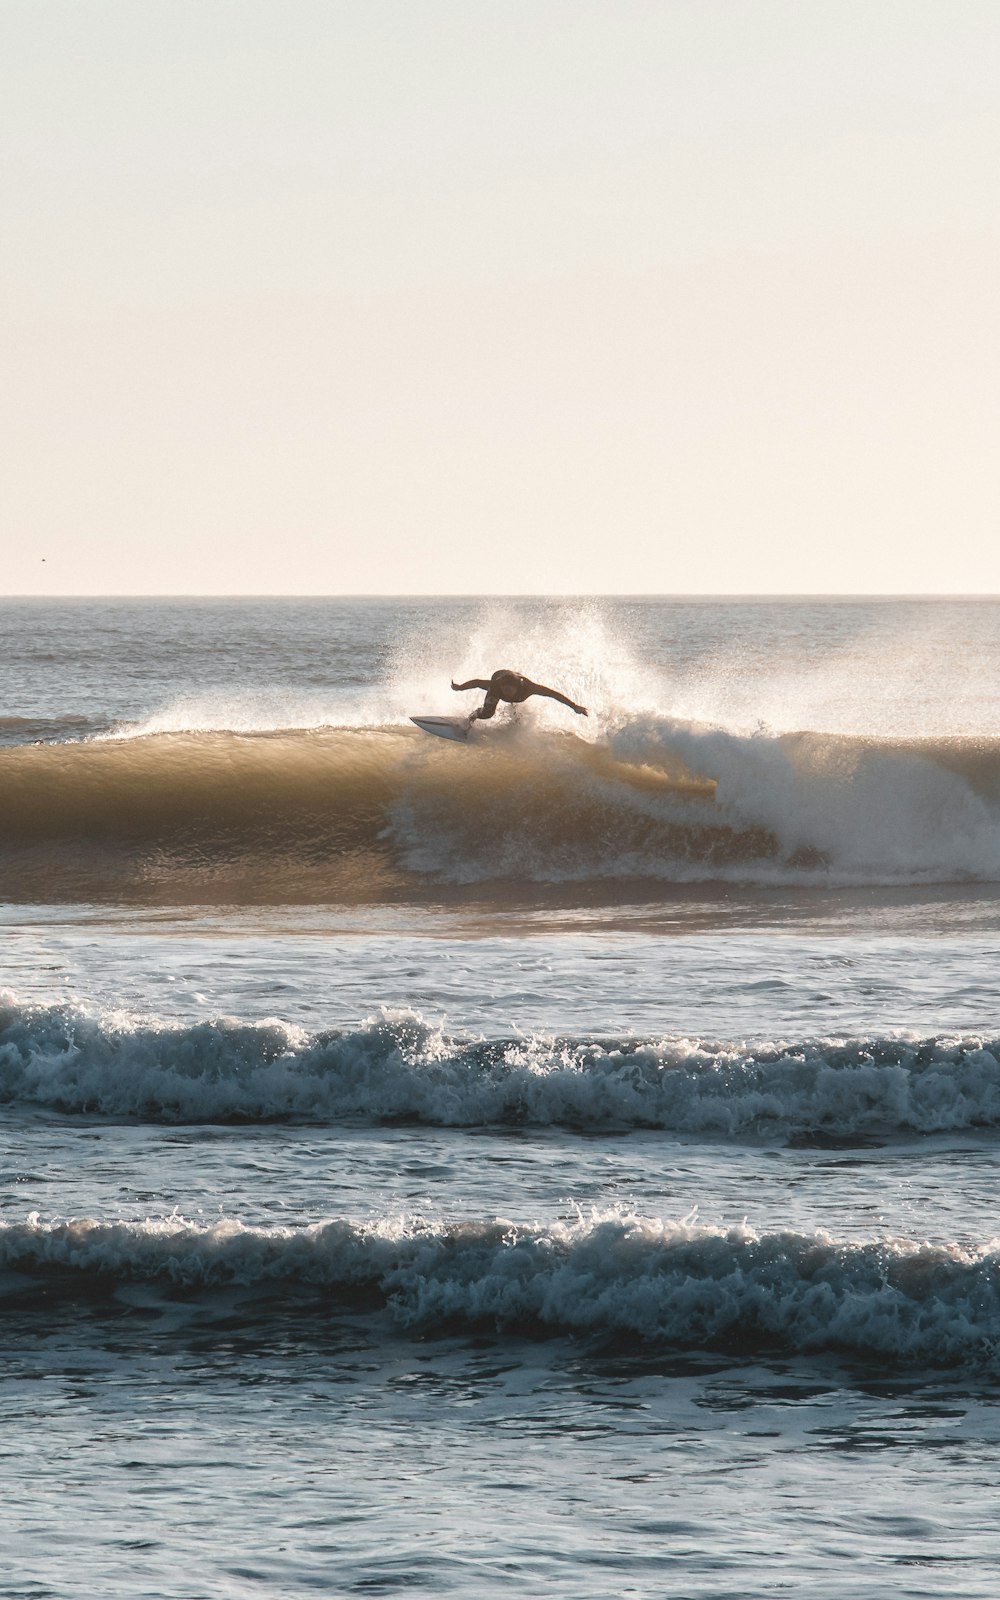 una persona surfeando sobre las olas